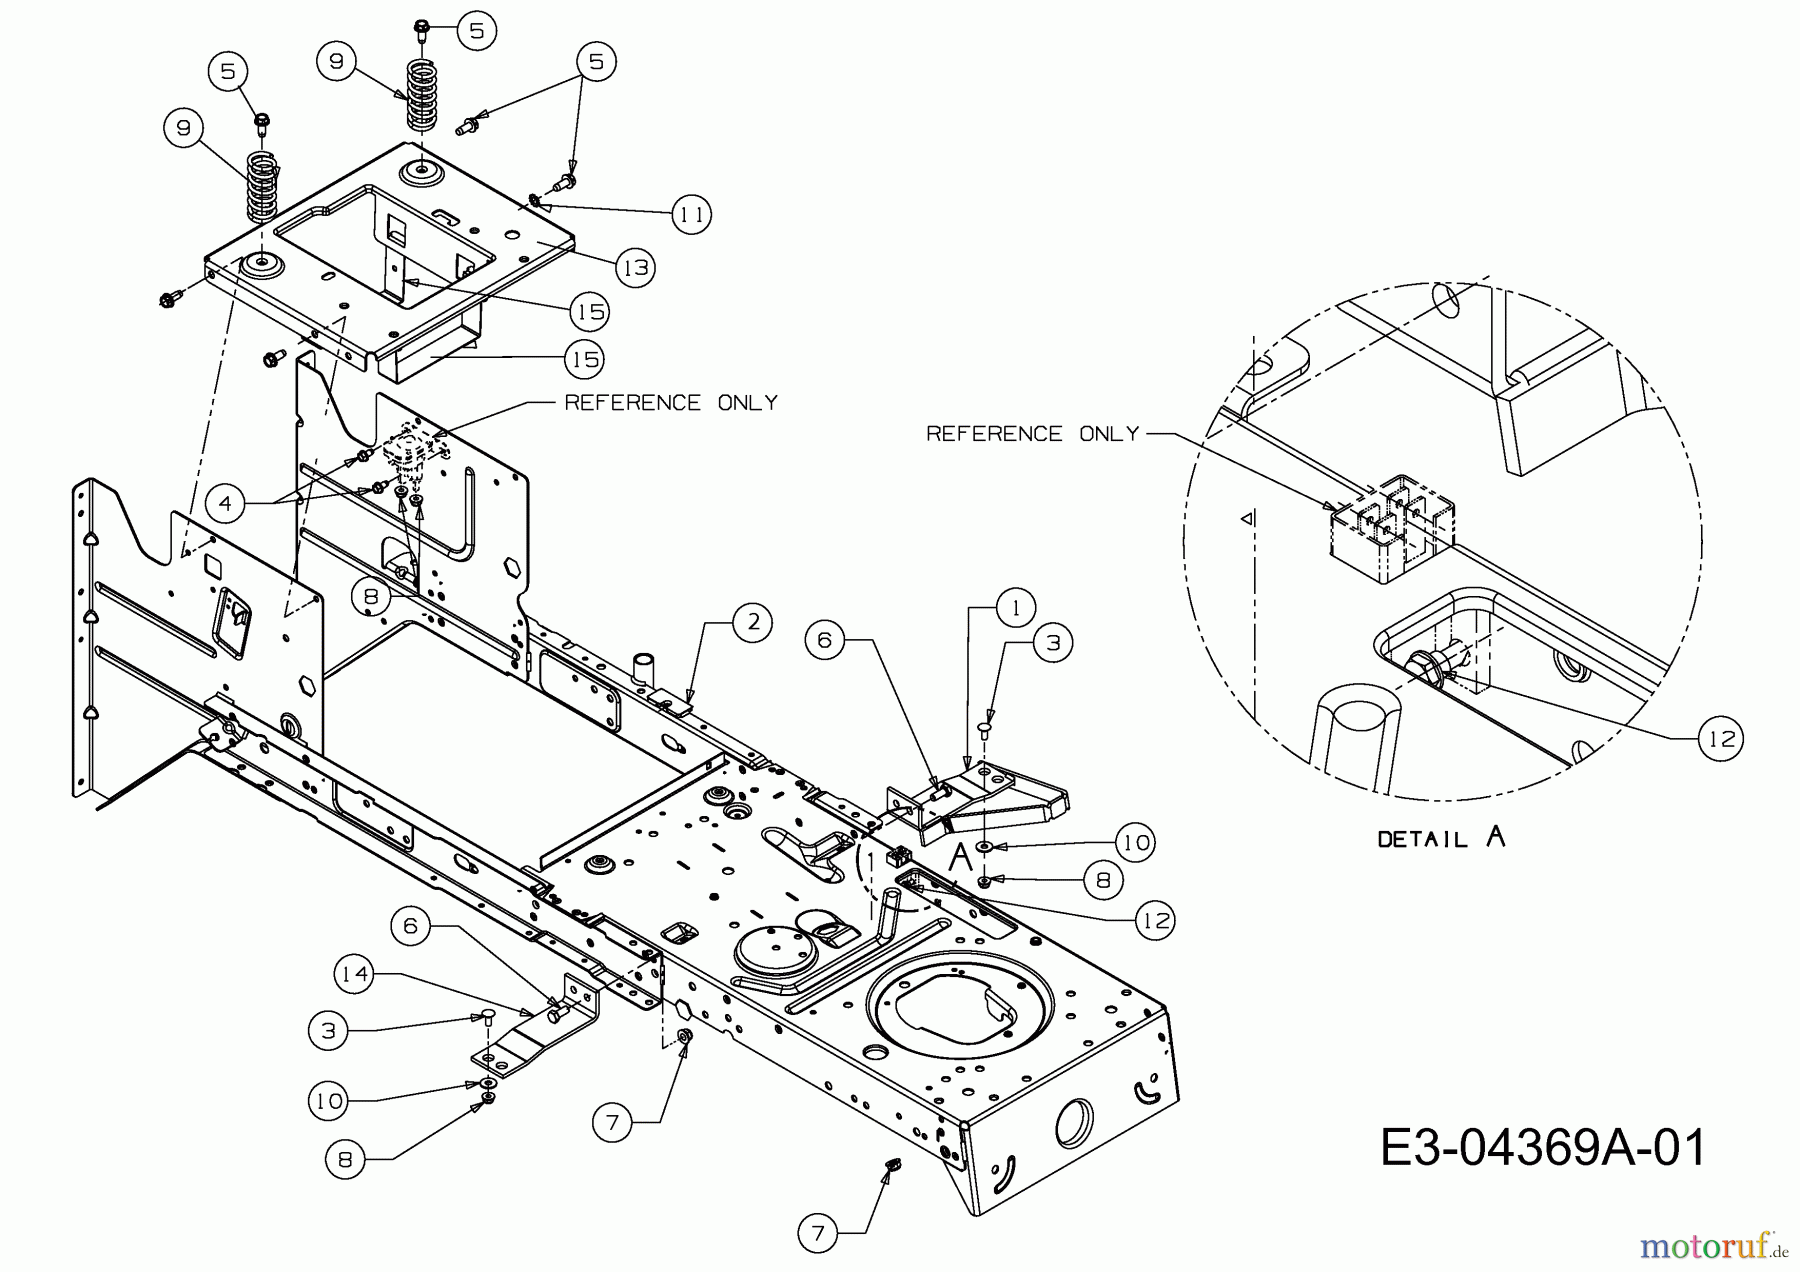  Sarp Rasentraktoren SR 135 BST 13AH778E498  (2009) Rahmen